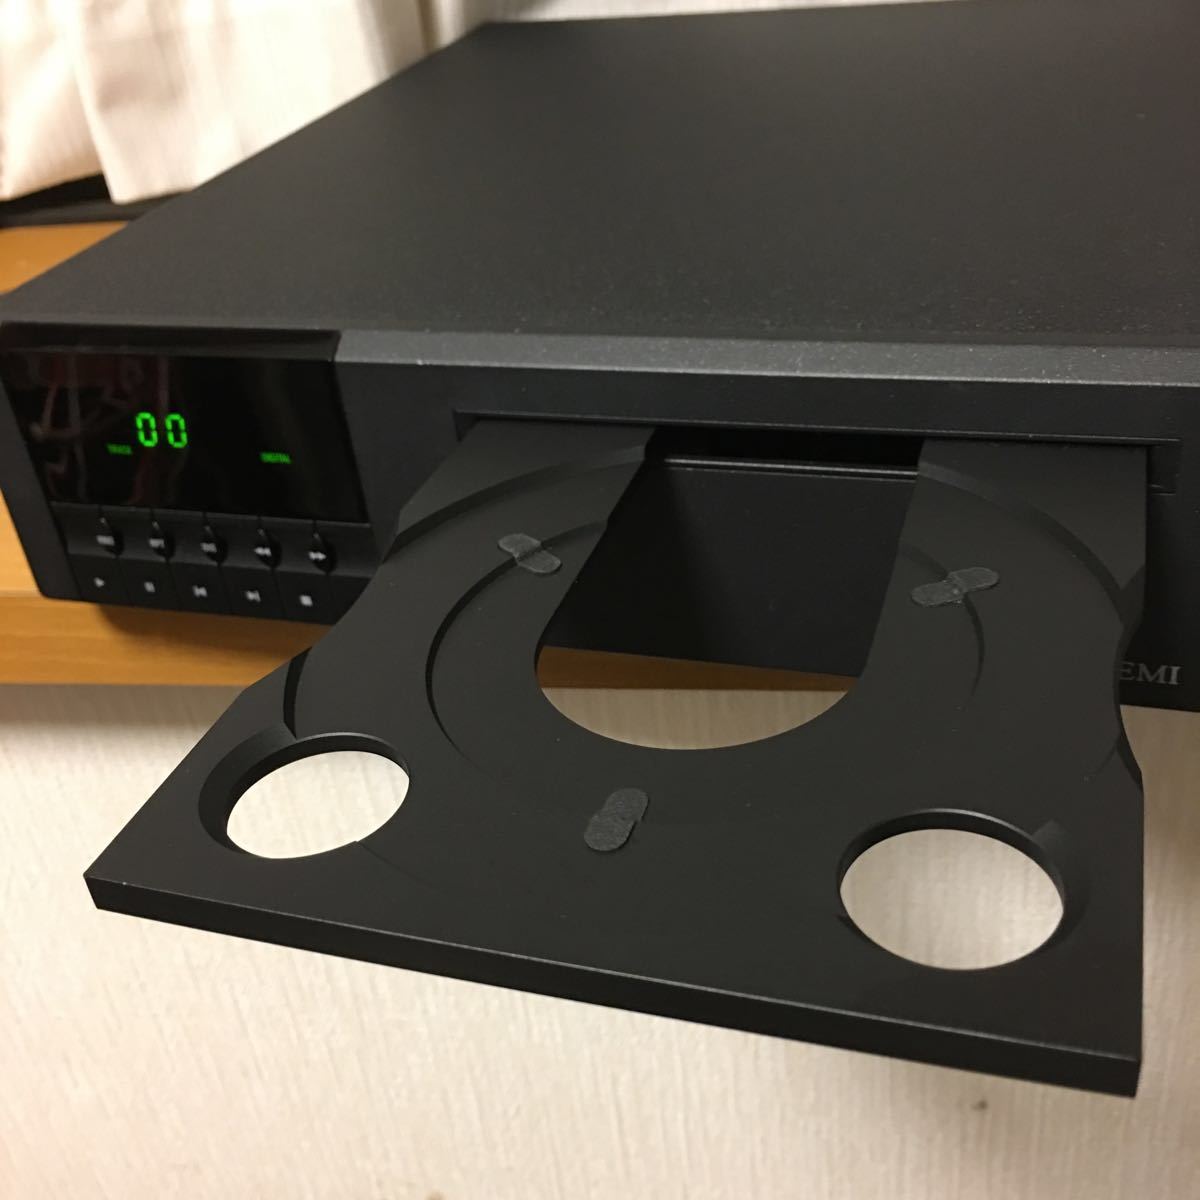 LINN IKEMI CD播放器，包括遙控IXOS電纜 原文:LINN IKEMI CDプレーヤー、リモコン付 IXOSケーブル付